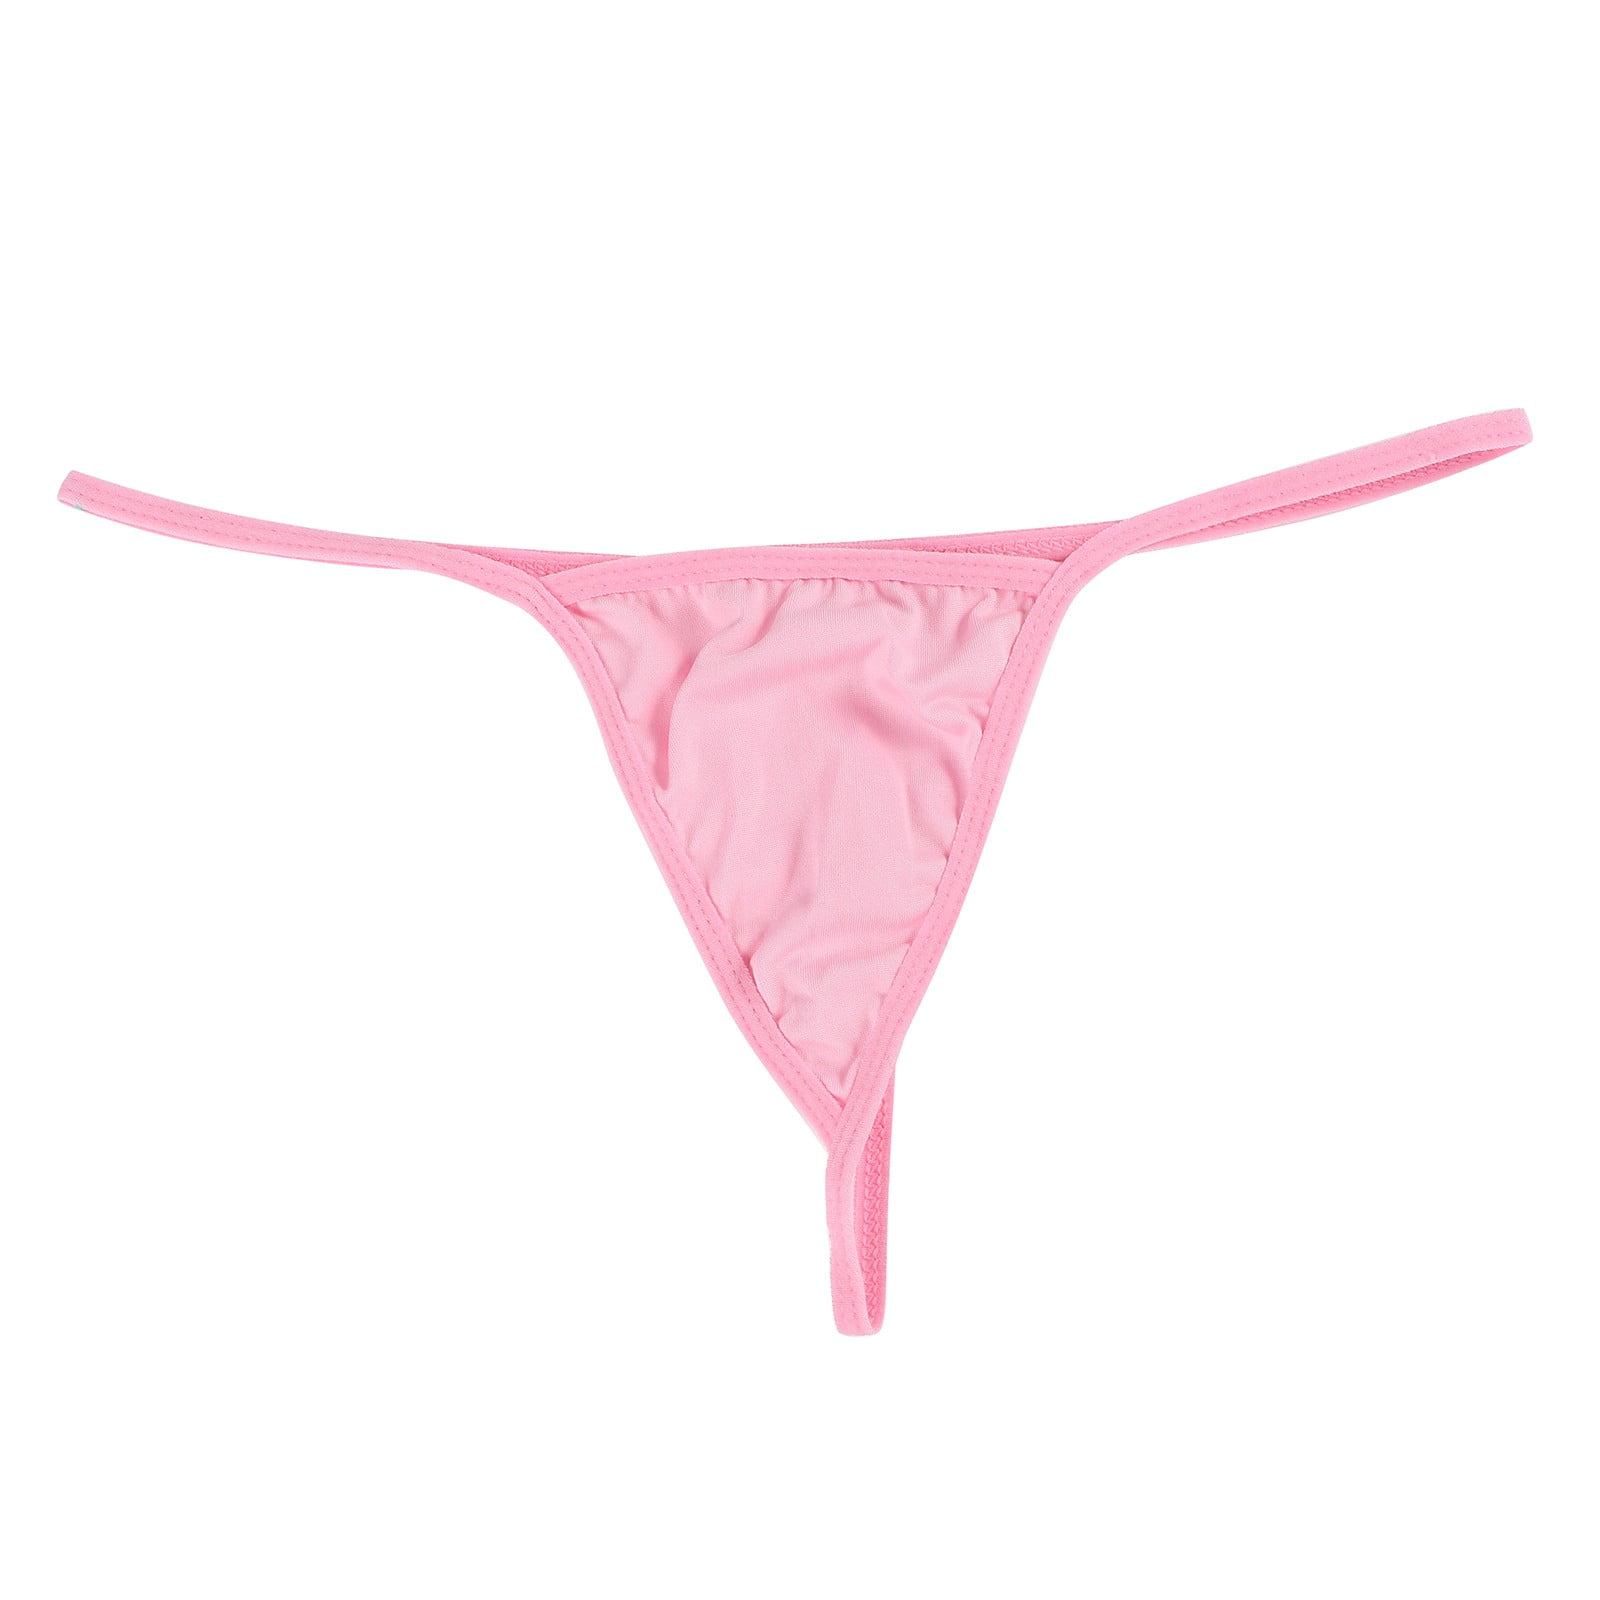 Frehsky underwear women Women Panties Thongs Lingerie Briefs Underwear Pink  